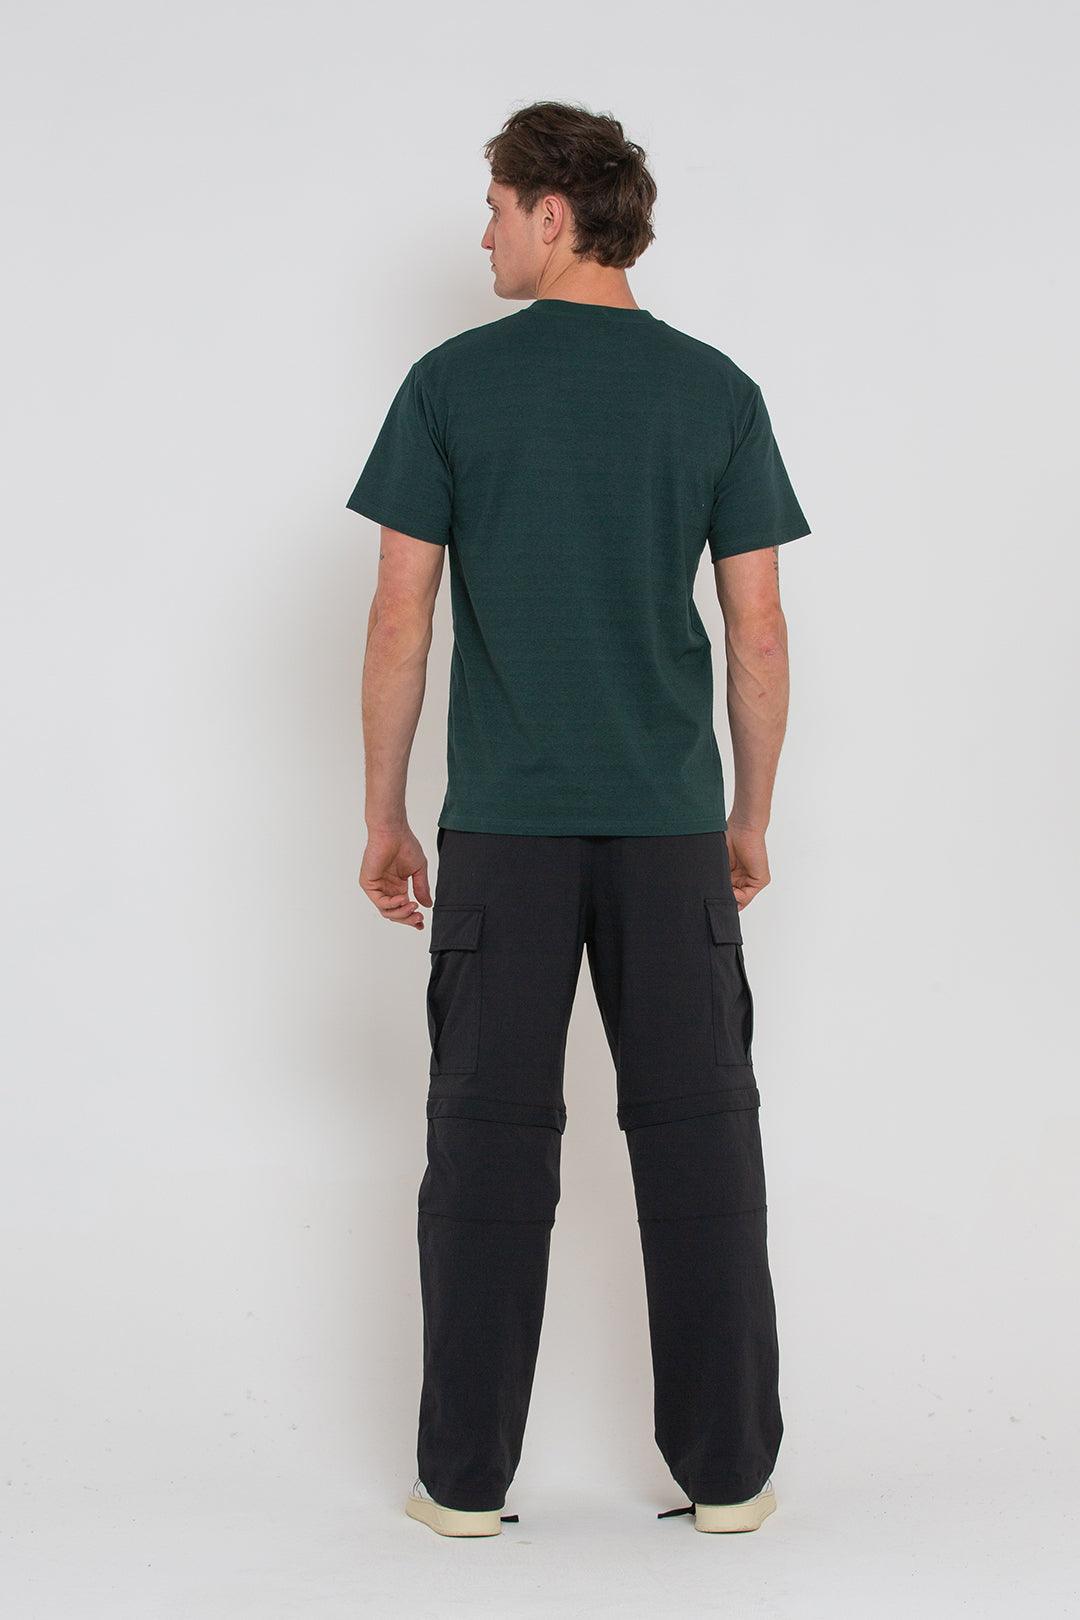 Camiseta Tango Pocket Trek Green - ECRU